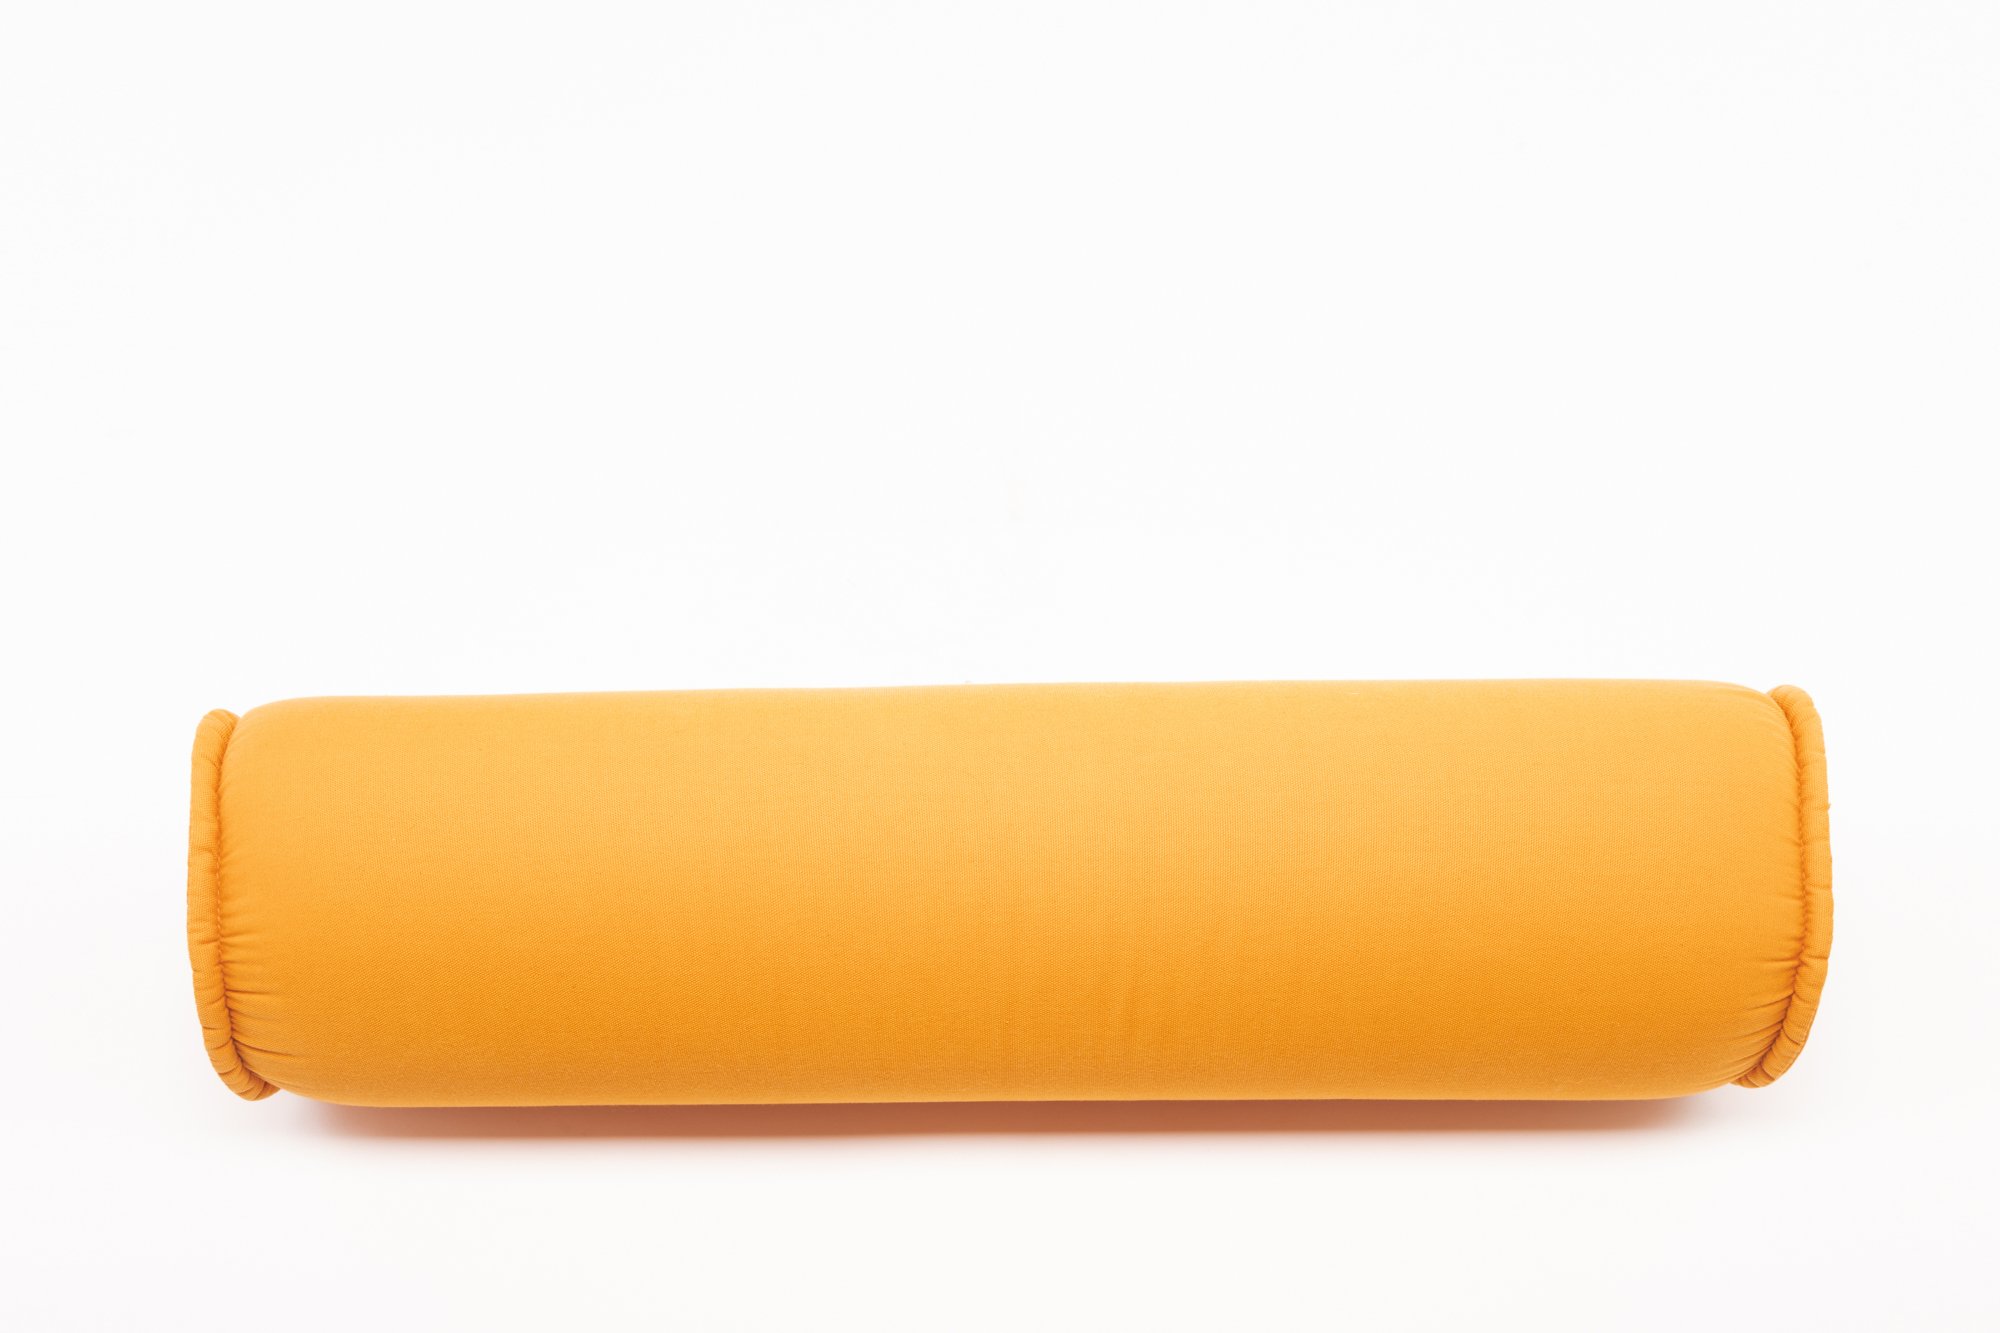 Cuscino tubolare arancione - BlackLab Props